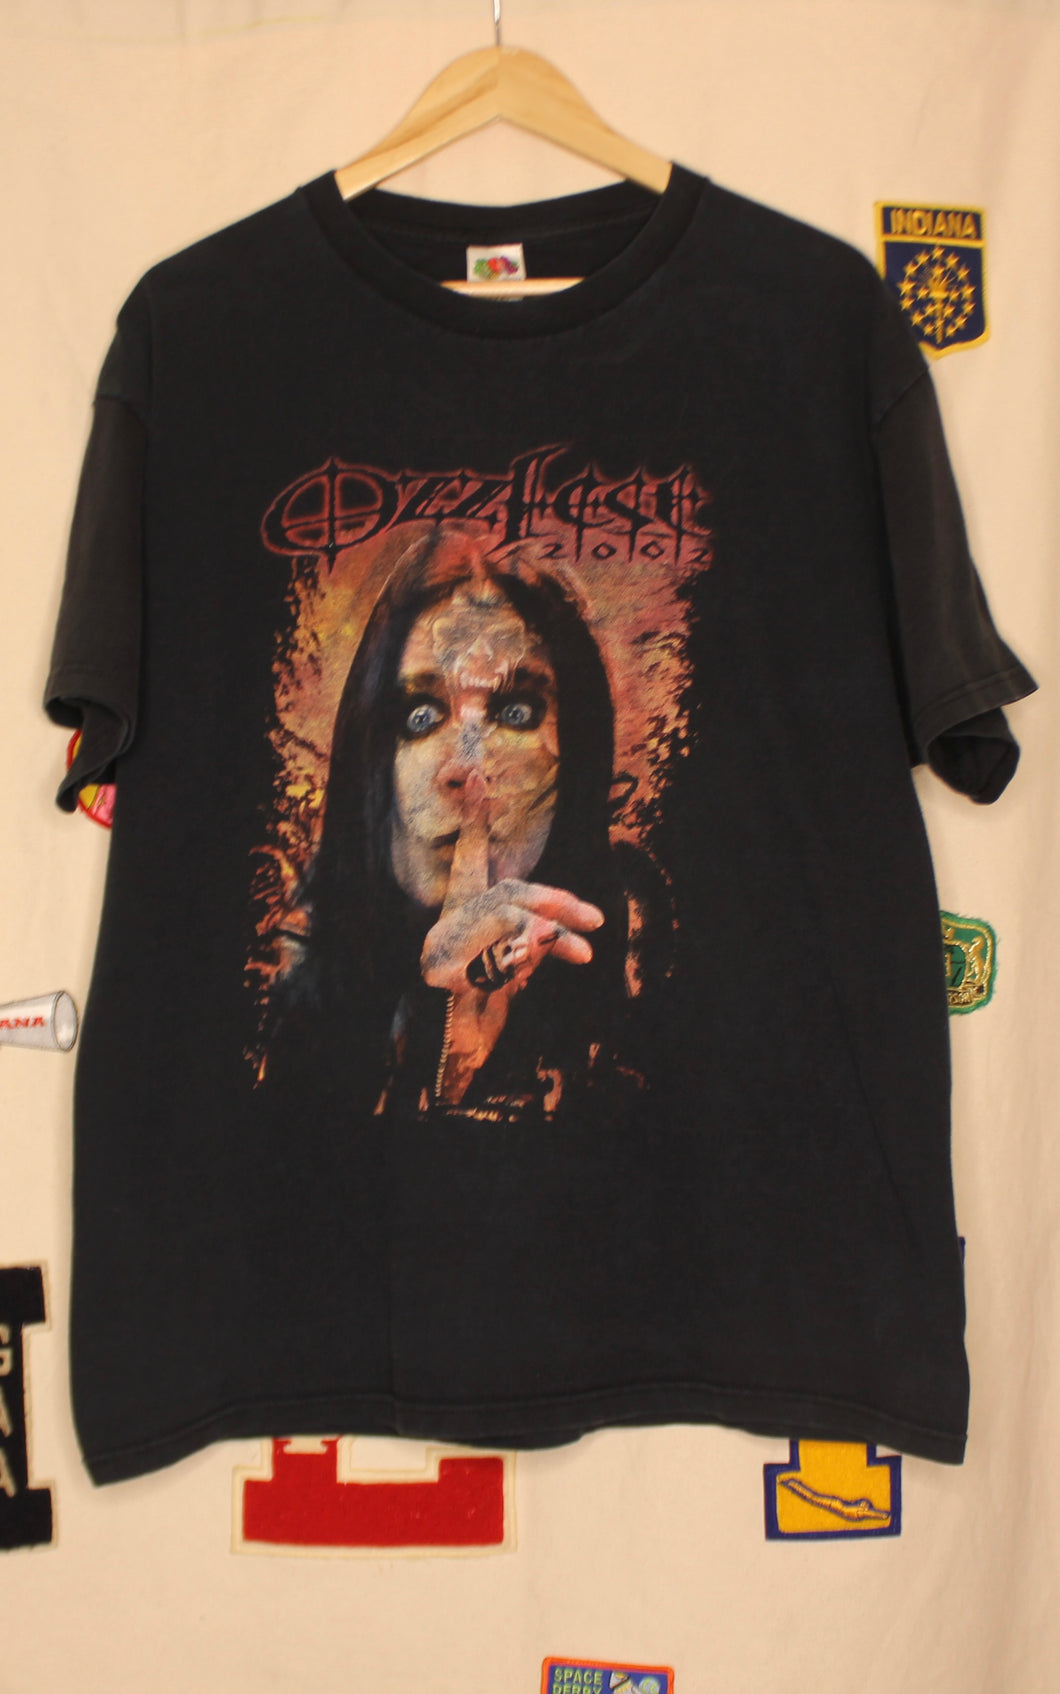 2002 Ozzfest Tour T-Shirt: XL